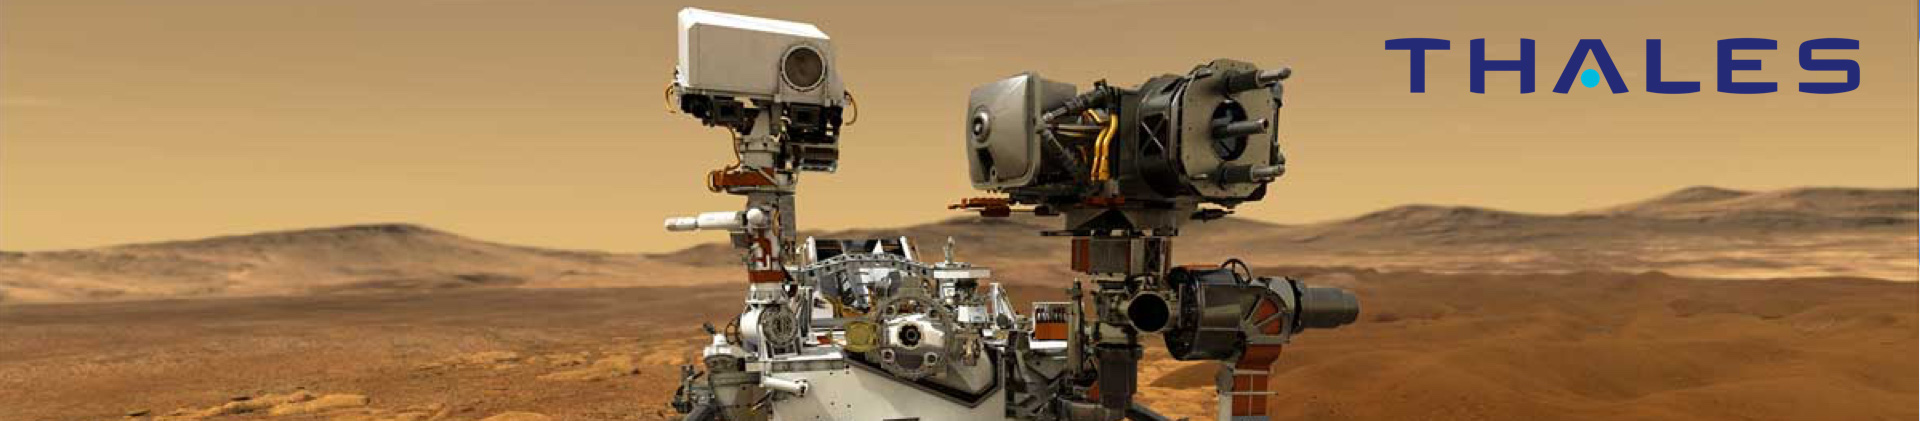 Stopa našich technologií už je i na Marsu